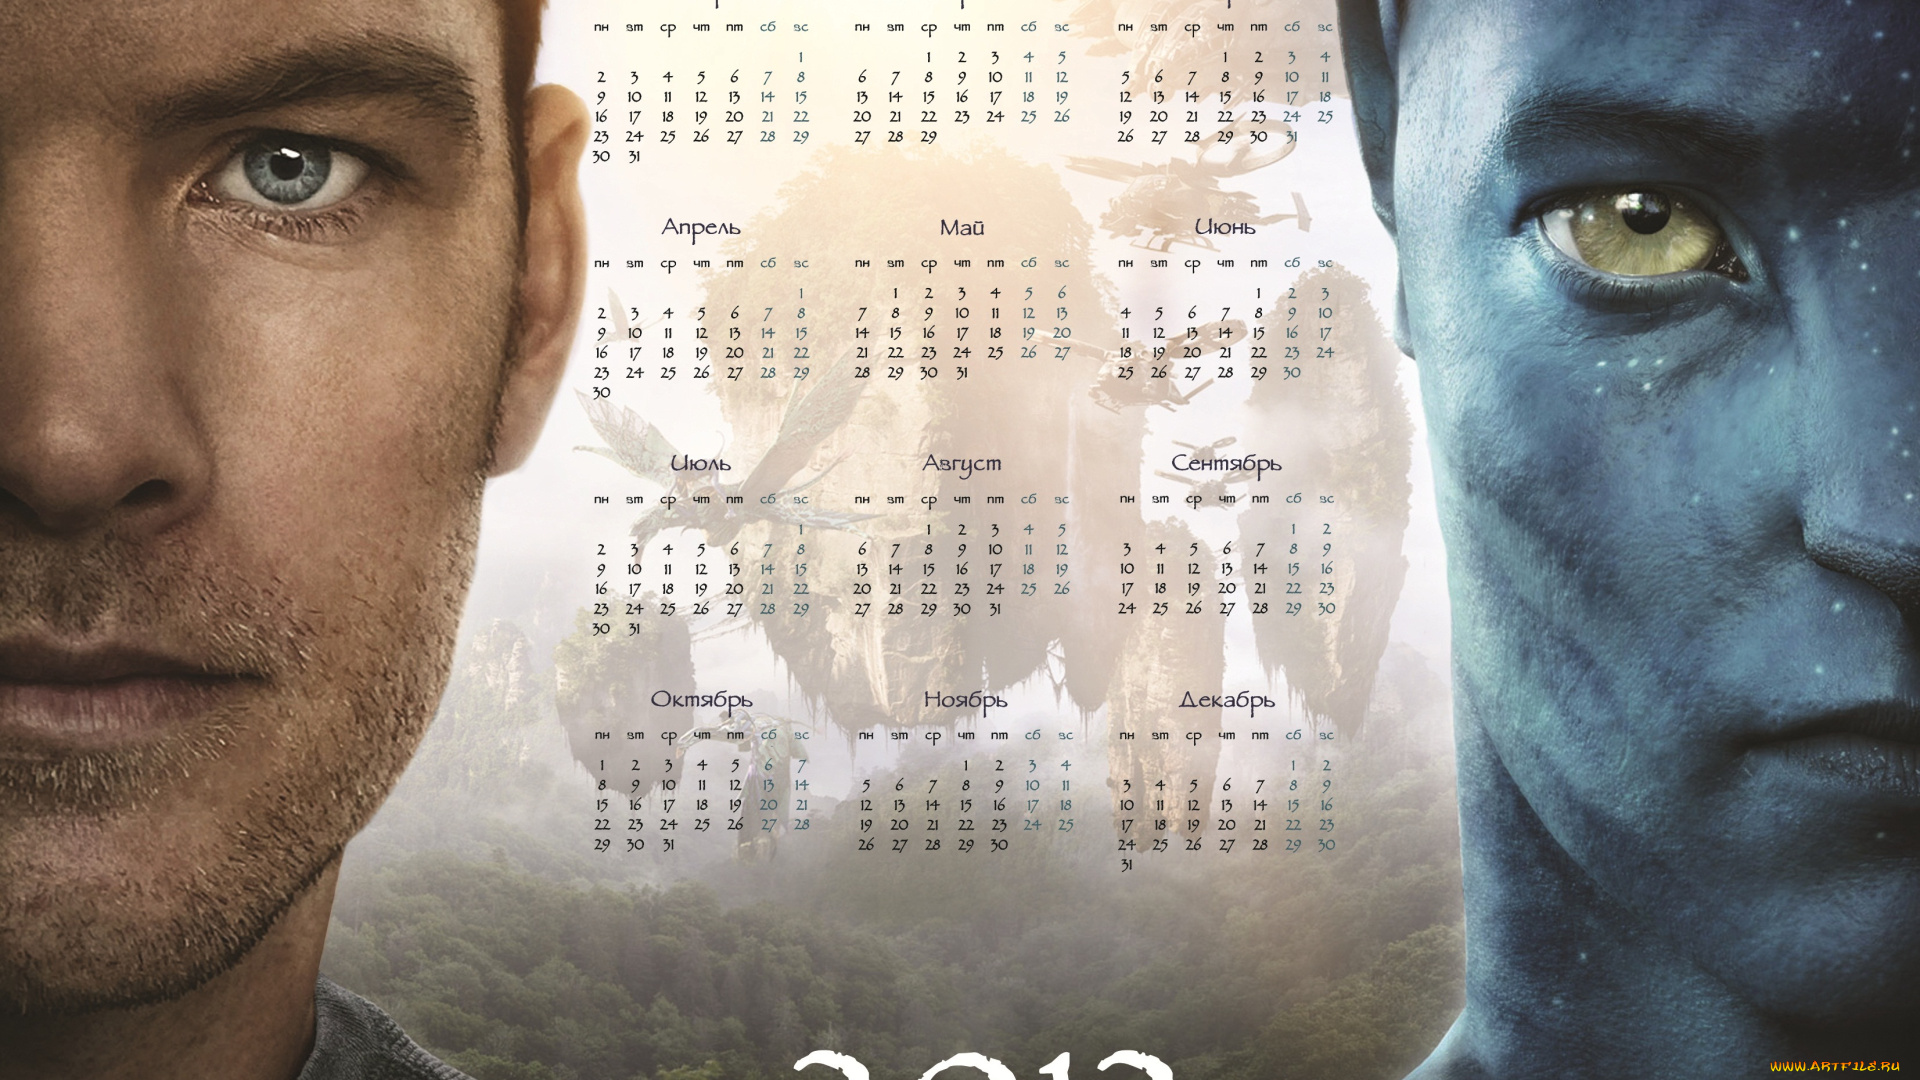 аватар, календари, кино, мультфильмы, 2012, календарь, фильм